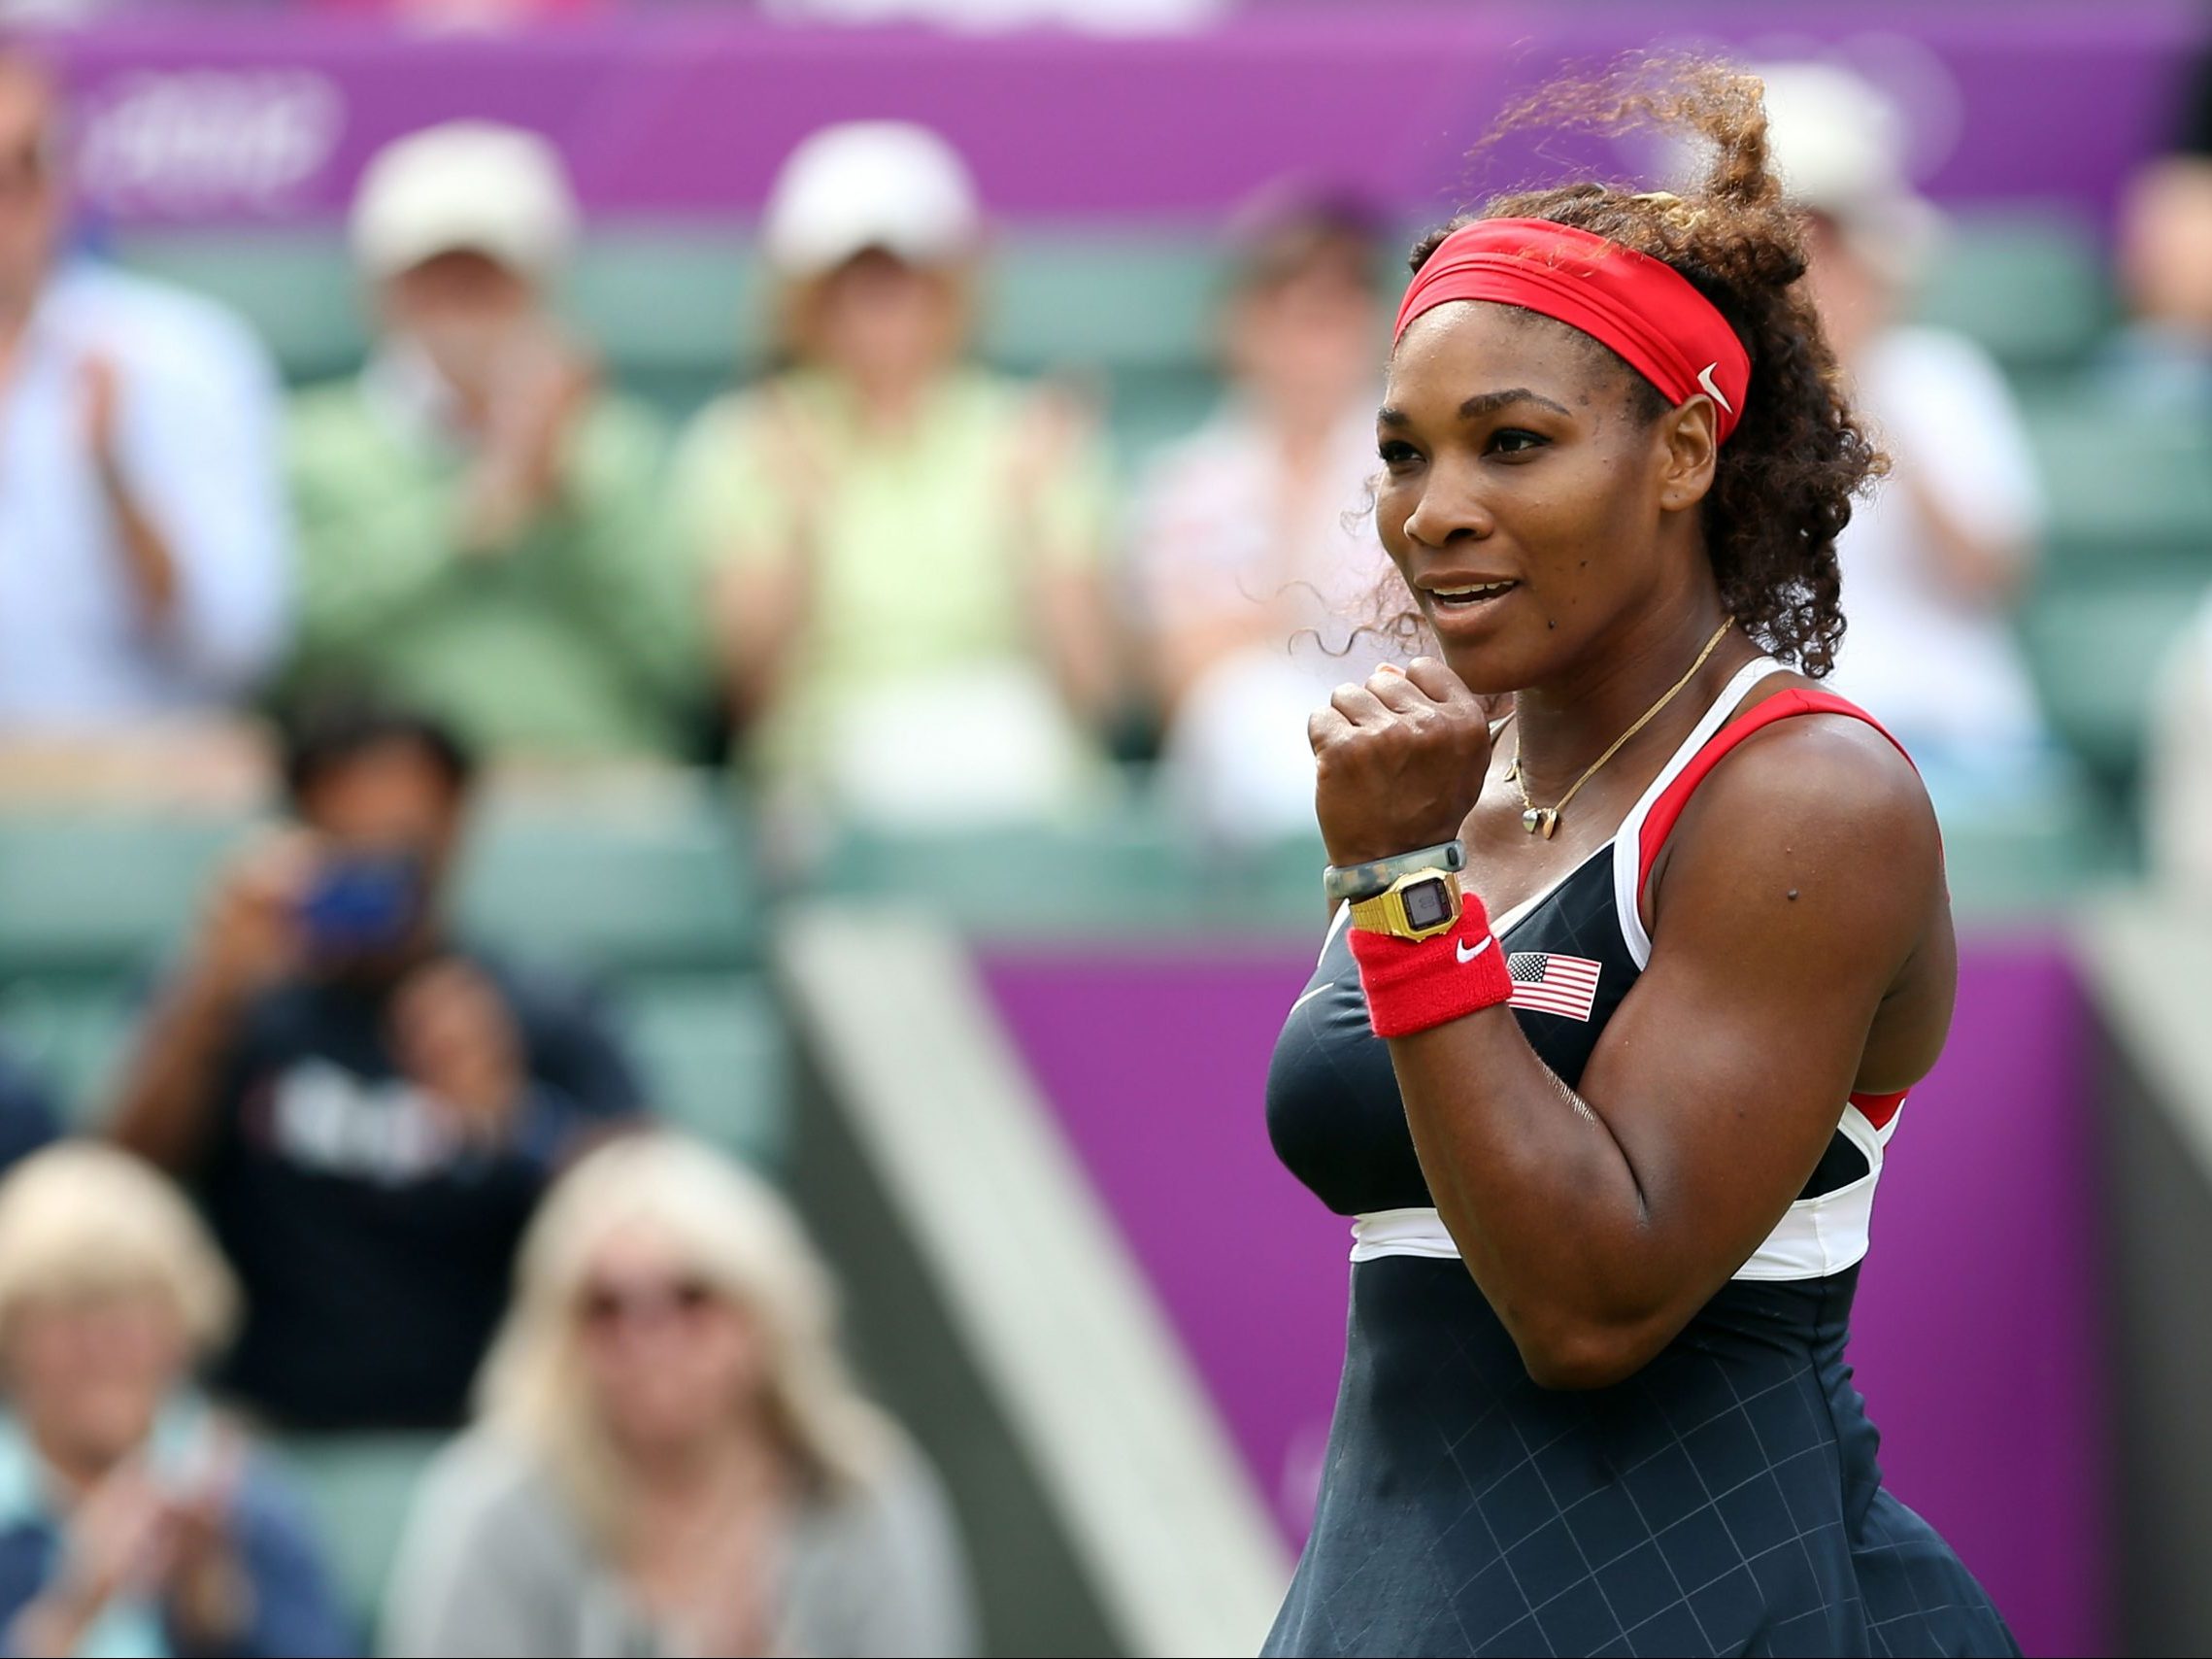 Οι wellness συνήθειες στις οποίες ορκίζεται η Serena Williams